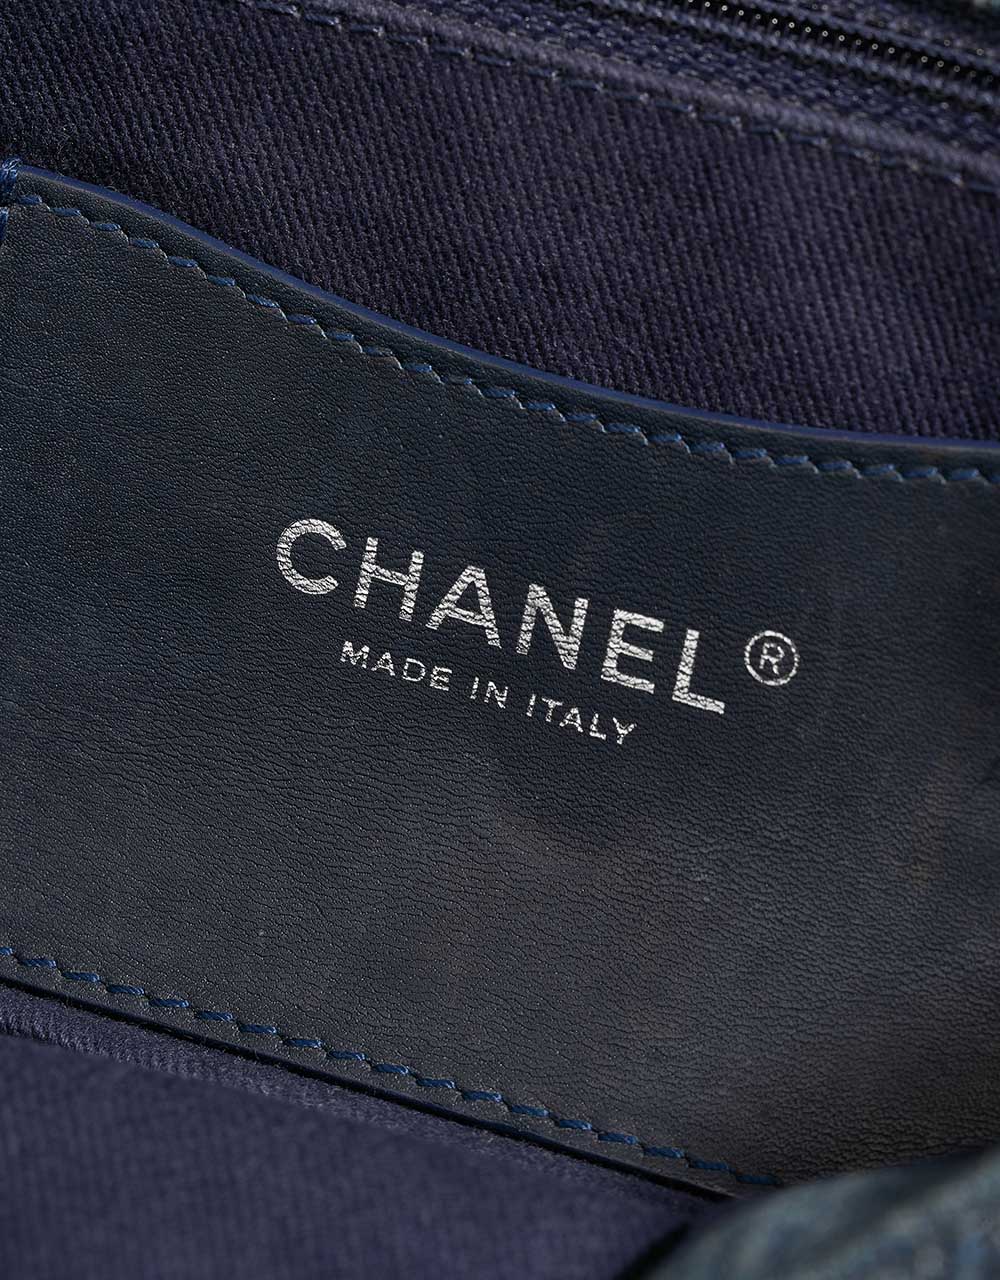 Chanel Timeless Medium Blue Logo | Verkaufen Sie Ihre Designer-Tasche auf Saclab.com